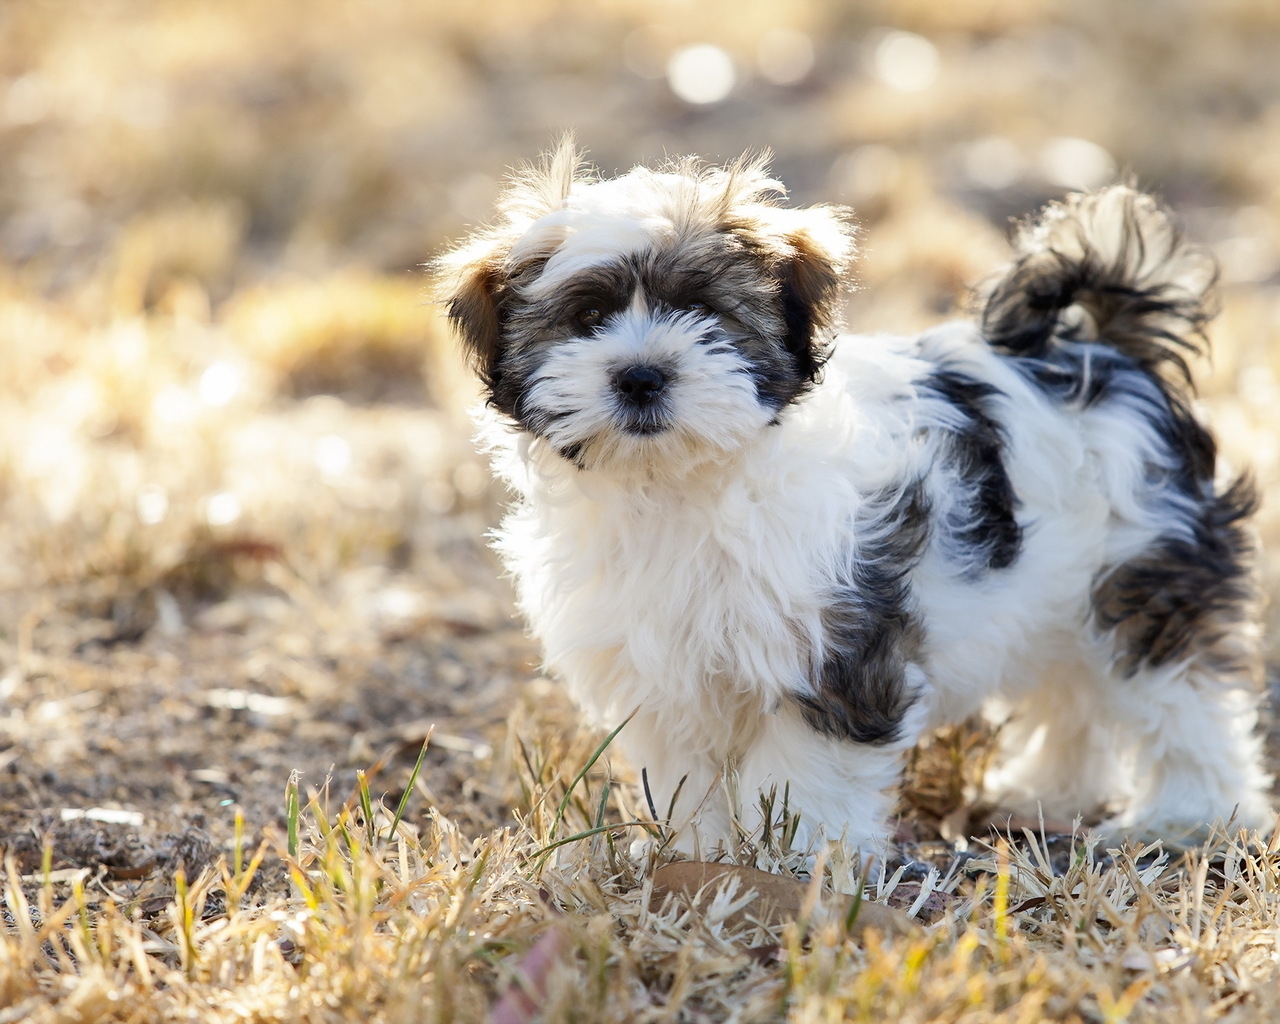 Cute Fluffy Dog for 1280 x 1024 resolution